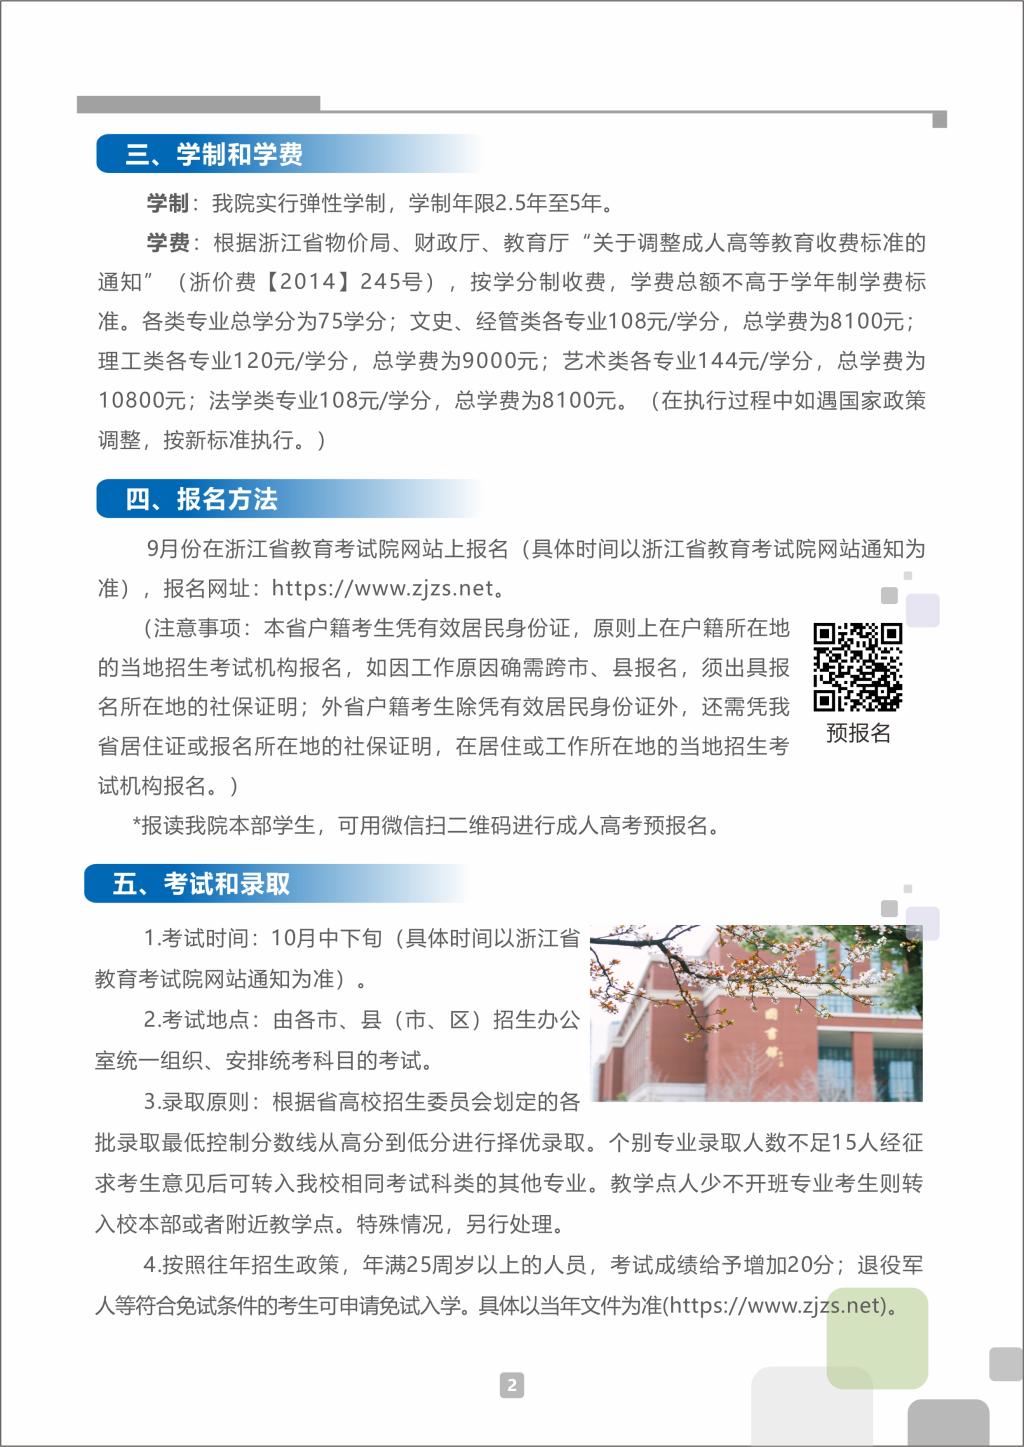 浙江工业大学之江学院2022年成人高考招生简章(图2)